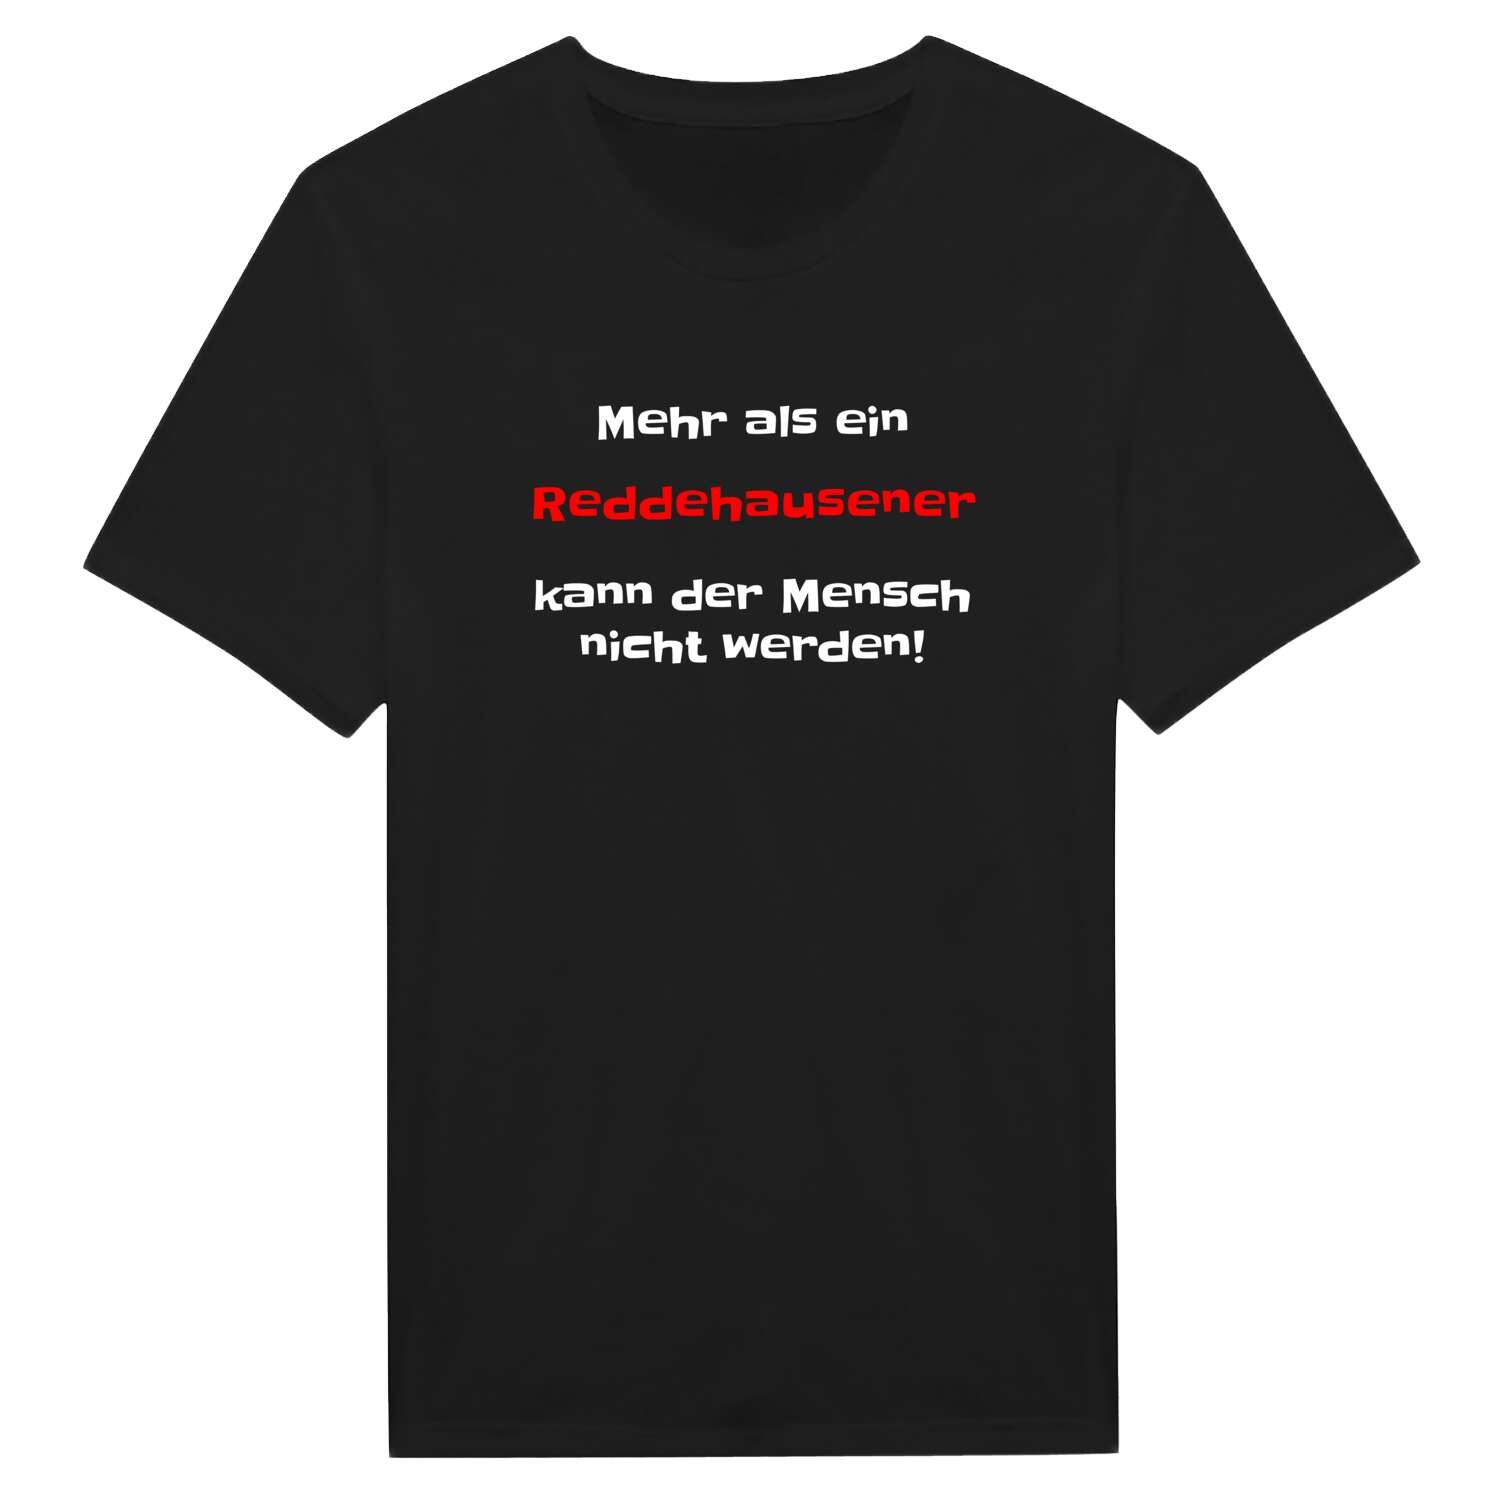 Reddehausen T-Shirt »Mehr als ein«